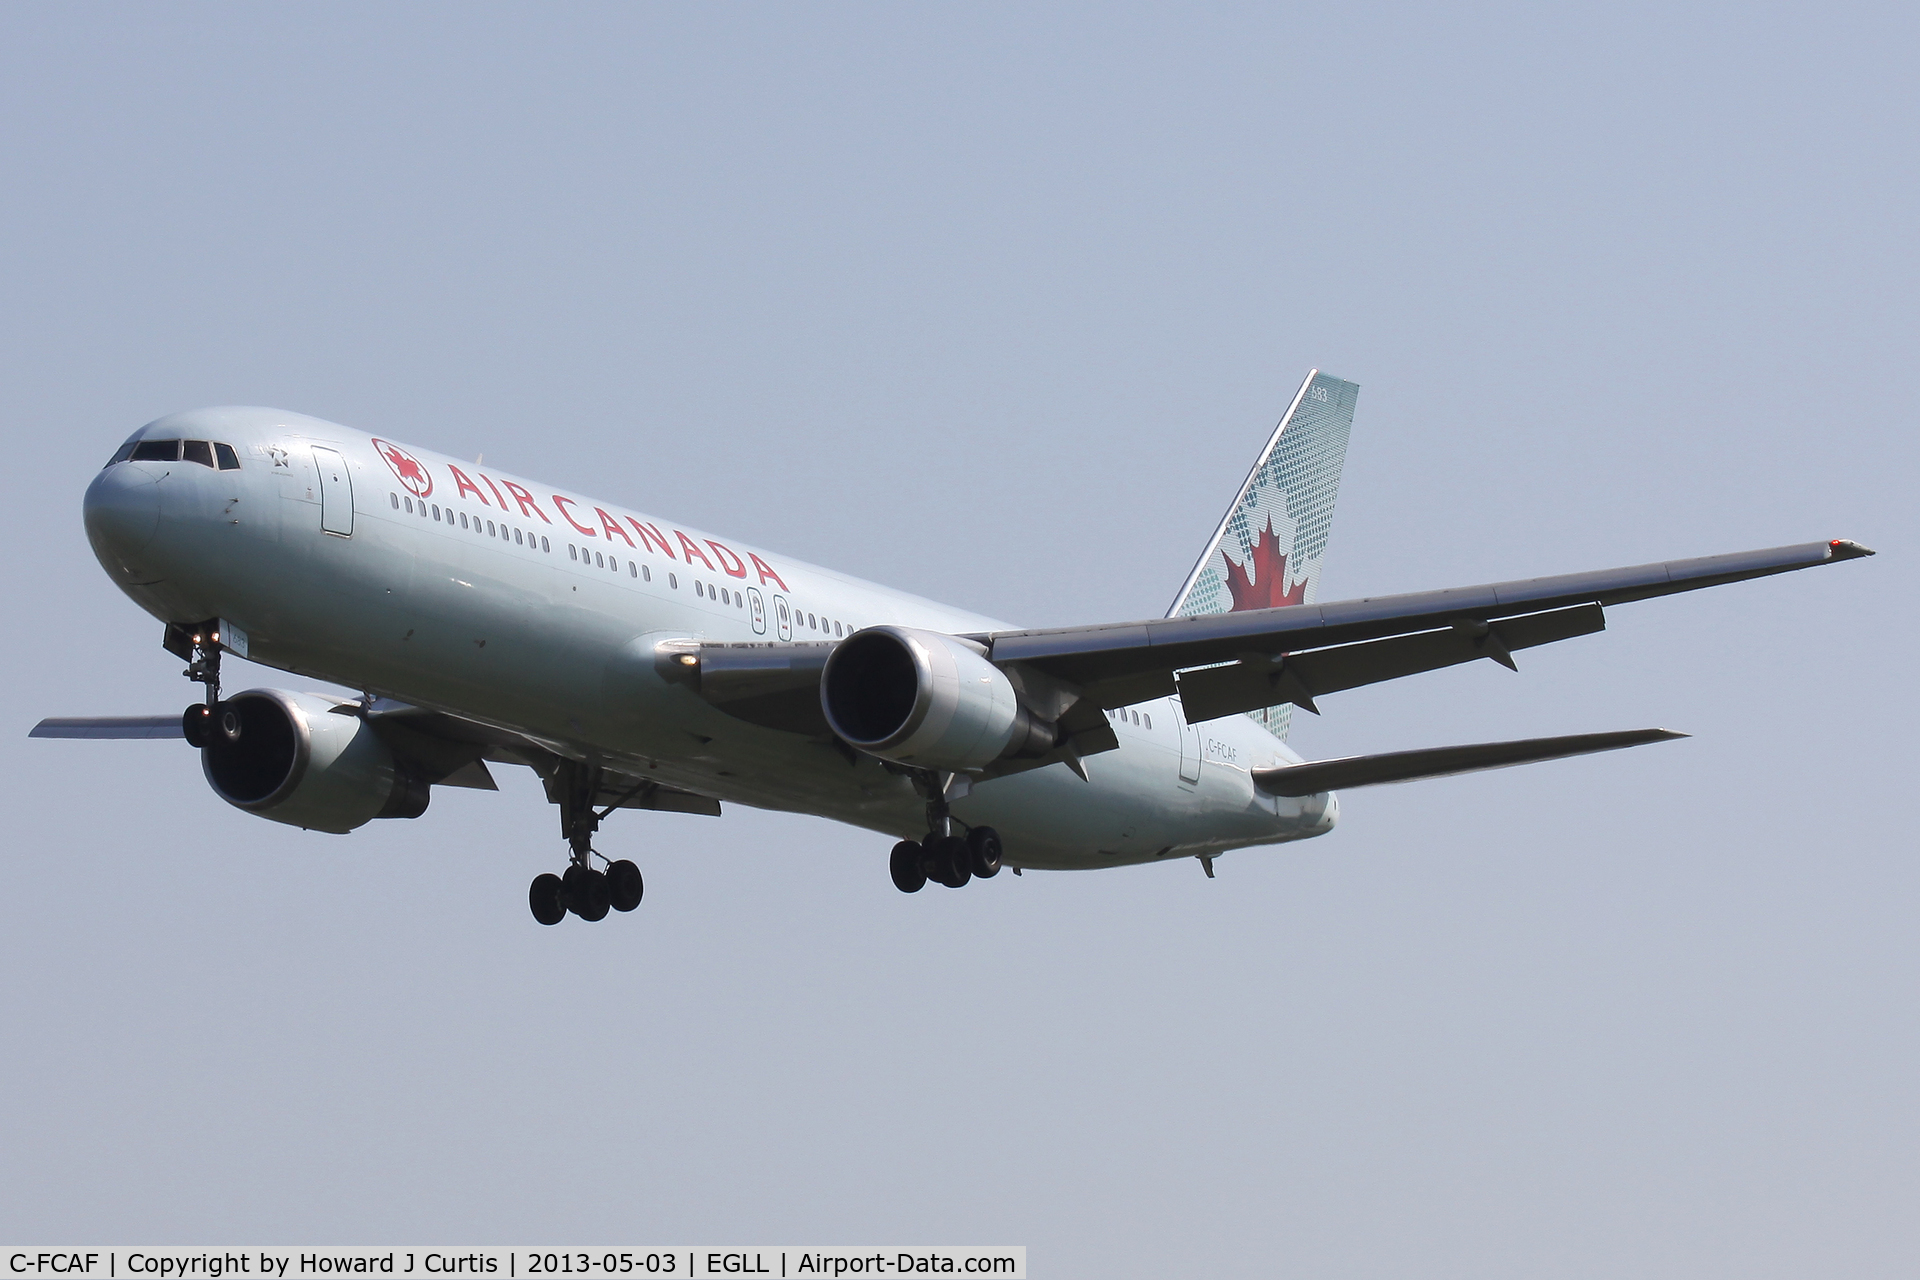 C-FCAF, 1988 Boeing 767-375 C/N 24084, Air Canada, on approach to runway 27L.